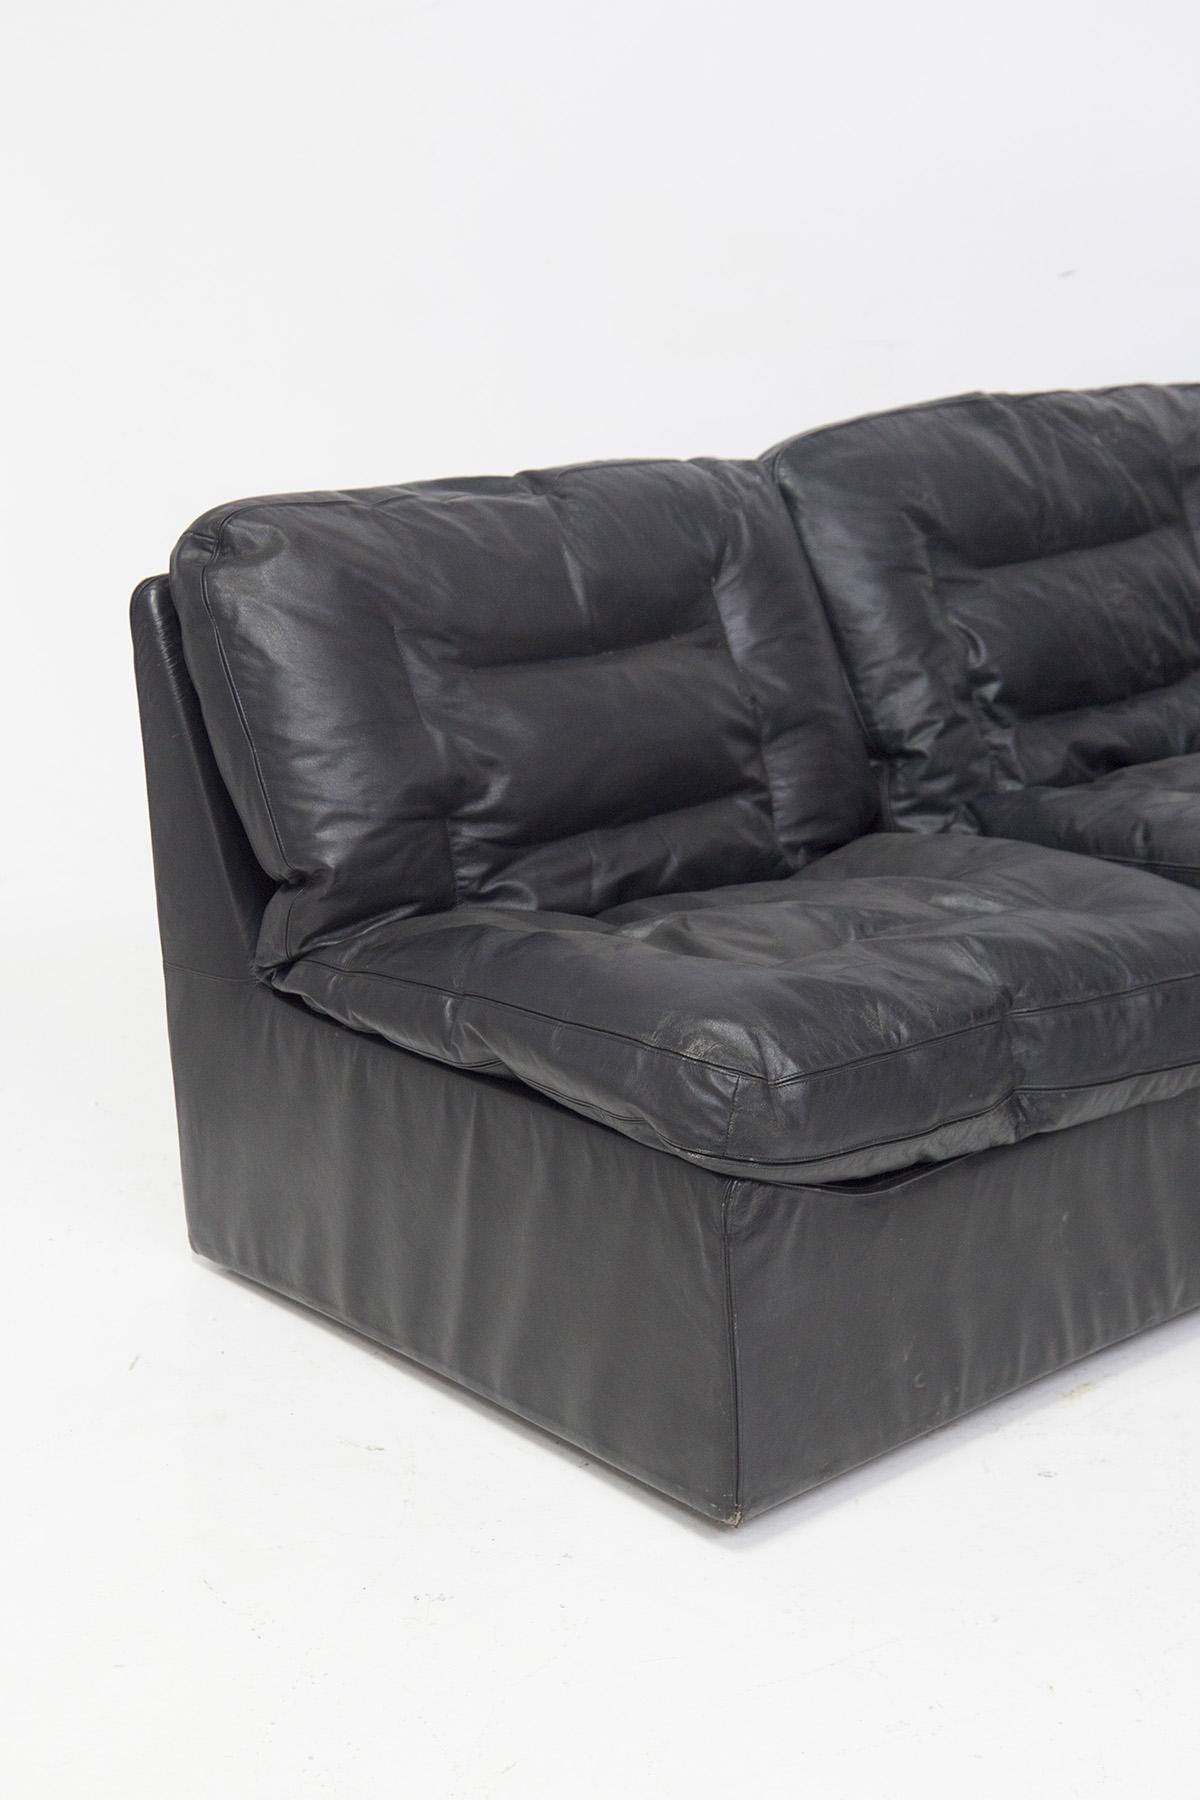 Schönes Sofa in schwarzem Leder aus der renommierten italienischen Manufaktur Zanotta.
Das Sofa ist für drei Sitze konzipiert, ganz aus weichem und originellem schwarzem Leder der Zeit, es ist Teil des Modells 